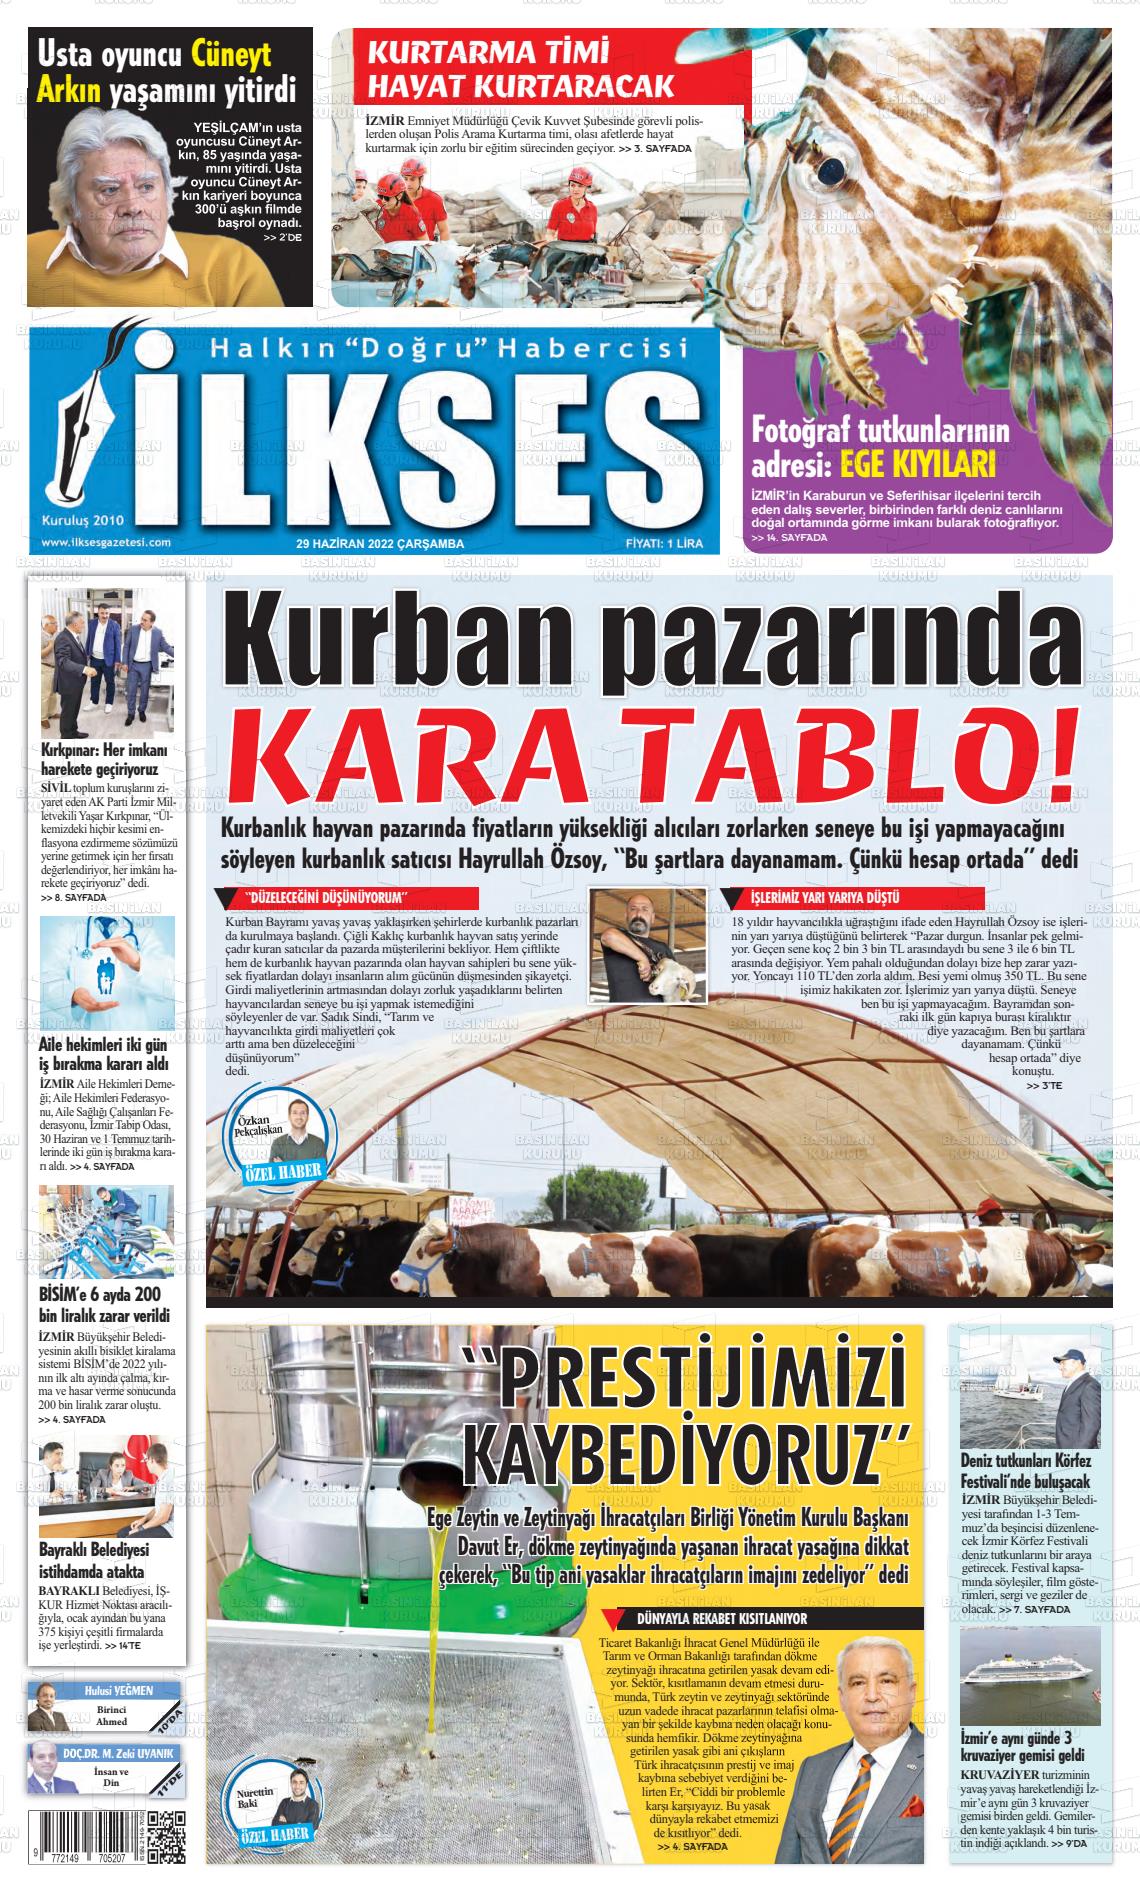 29 Haziran 2022 İlkses Gazete Manşeti